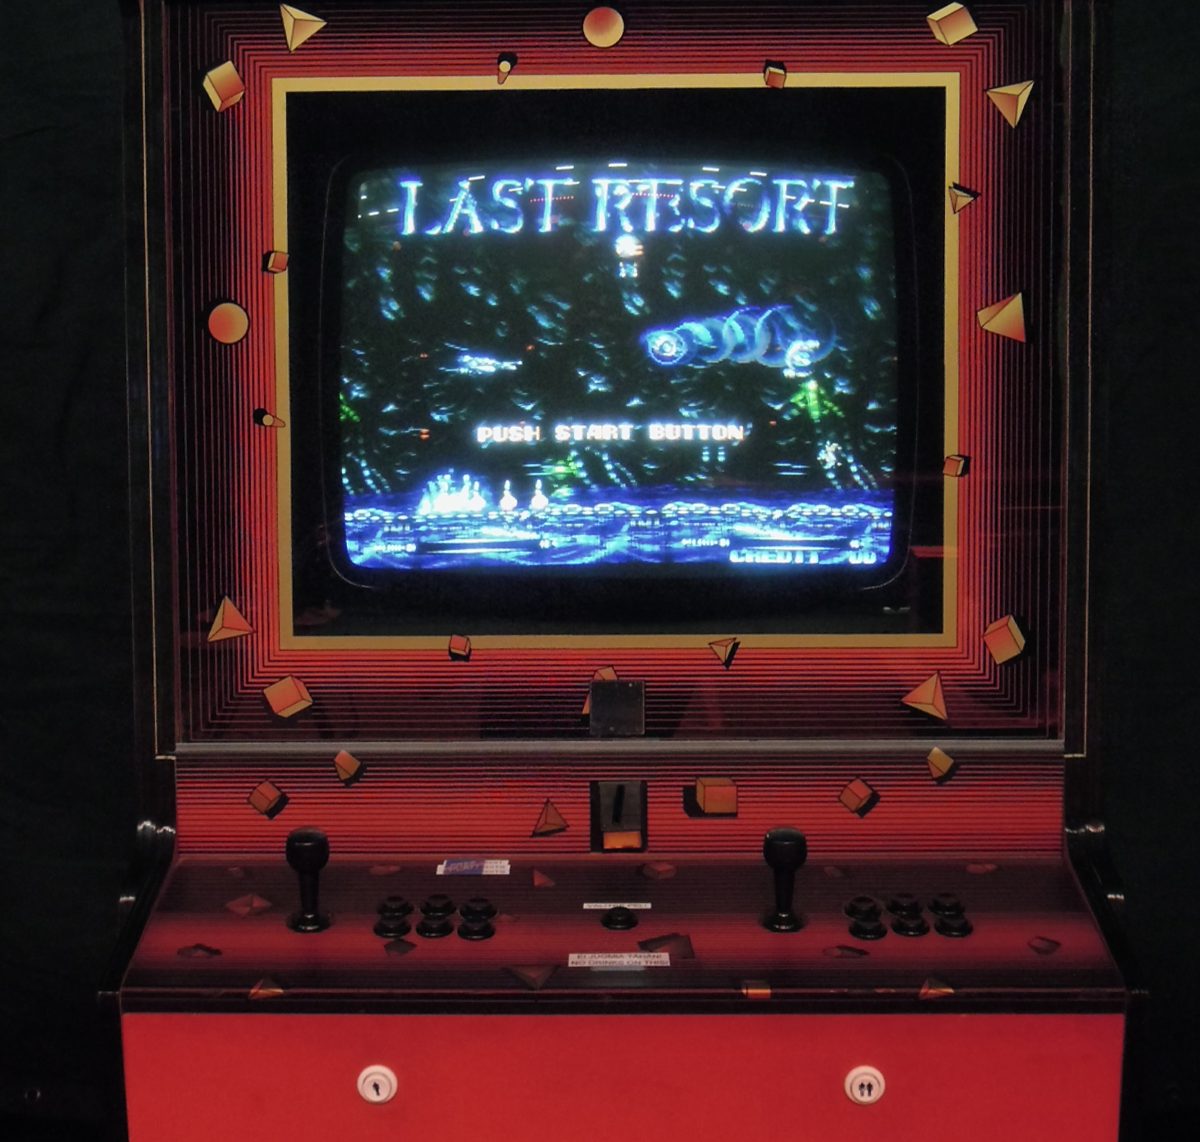 Punainen peliautomaatti, jonka näytössä lukee Last resort.